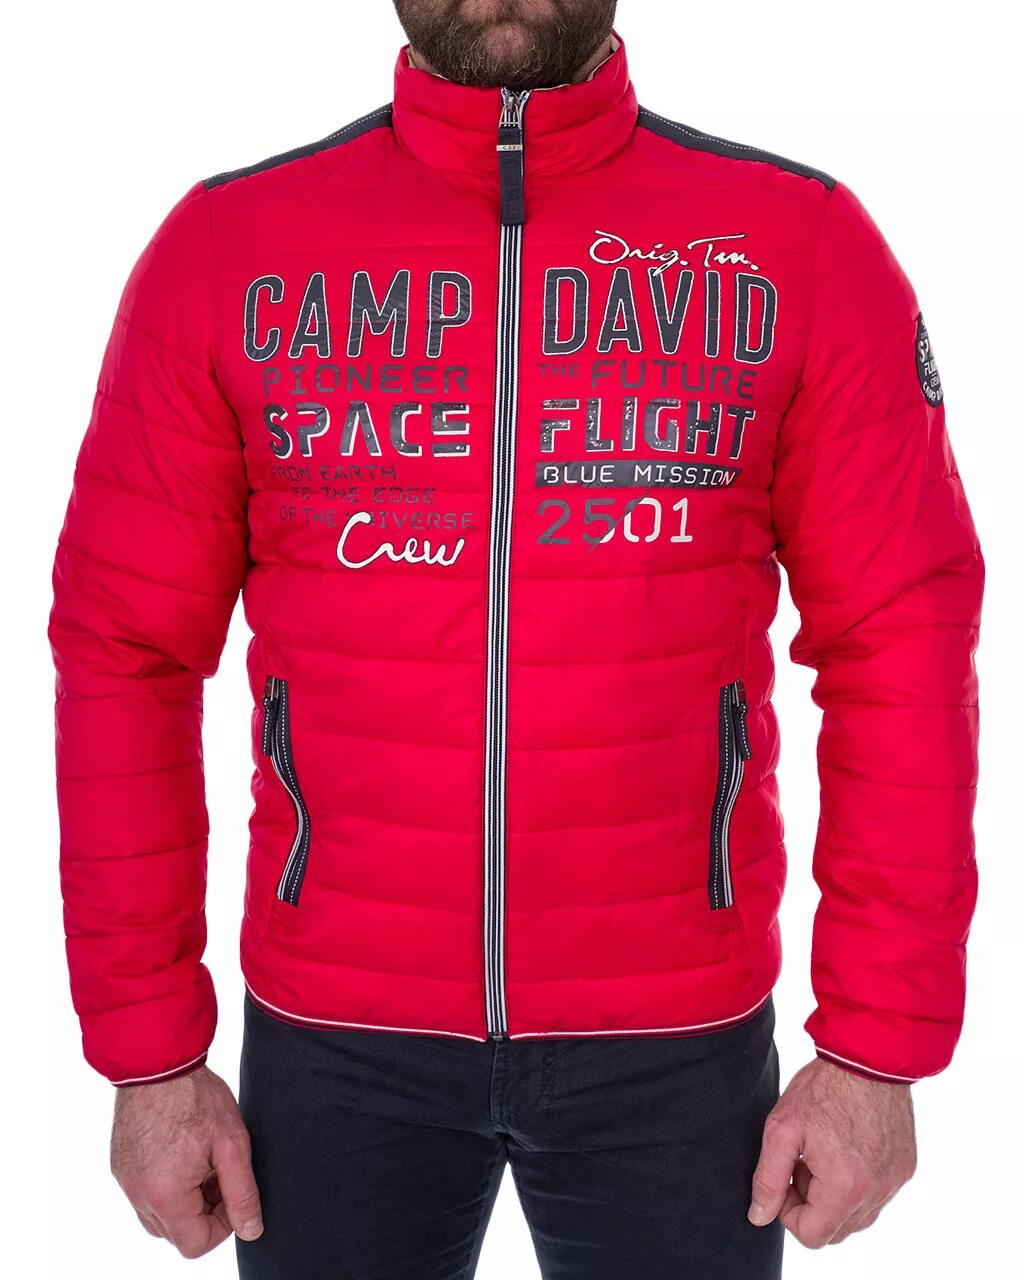 Camp куртка. Camp David куртка зимняя красная. Мужские куртки Кэмп Дэвид. Куртка Кэмп Дэвид красная. Camp David куртка мужская XXL.